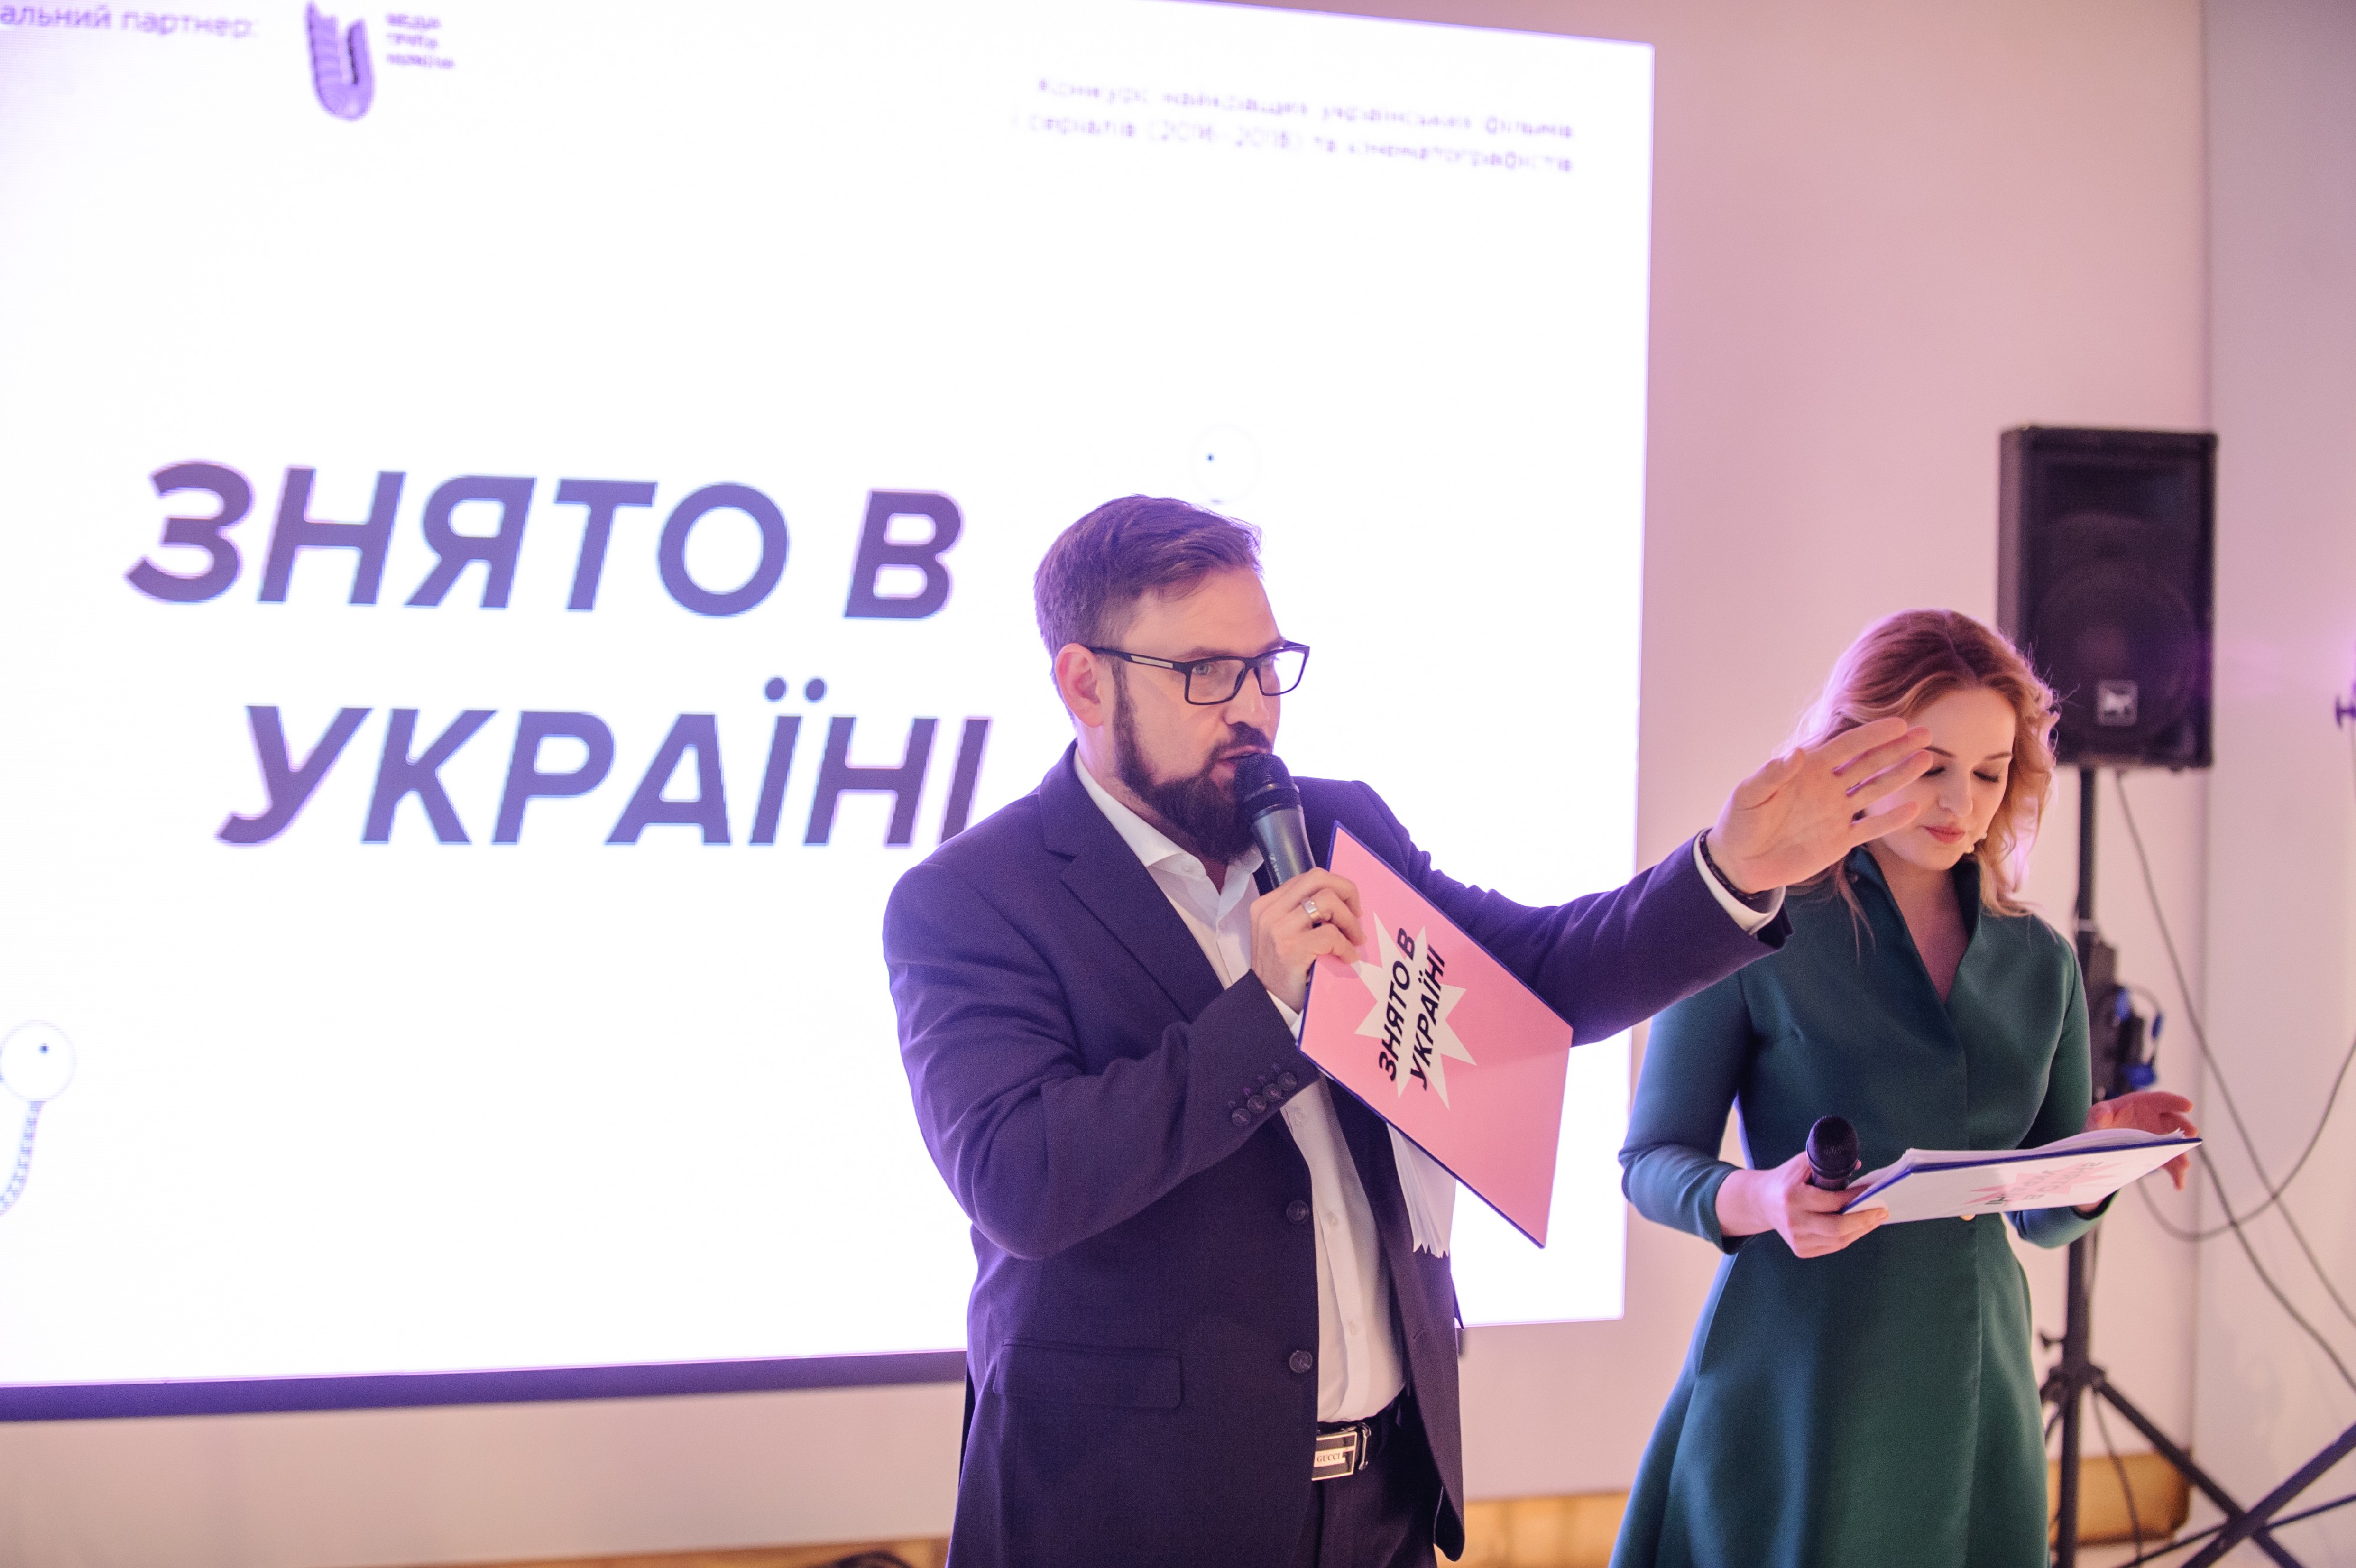 Оголошено переможців рейтингу «Знято в Україні»